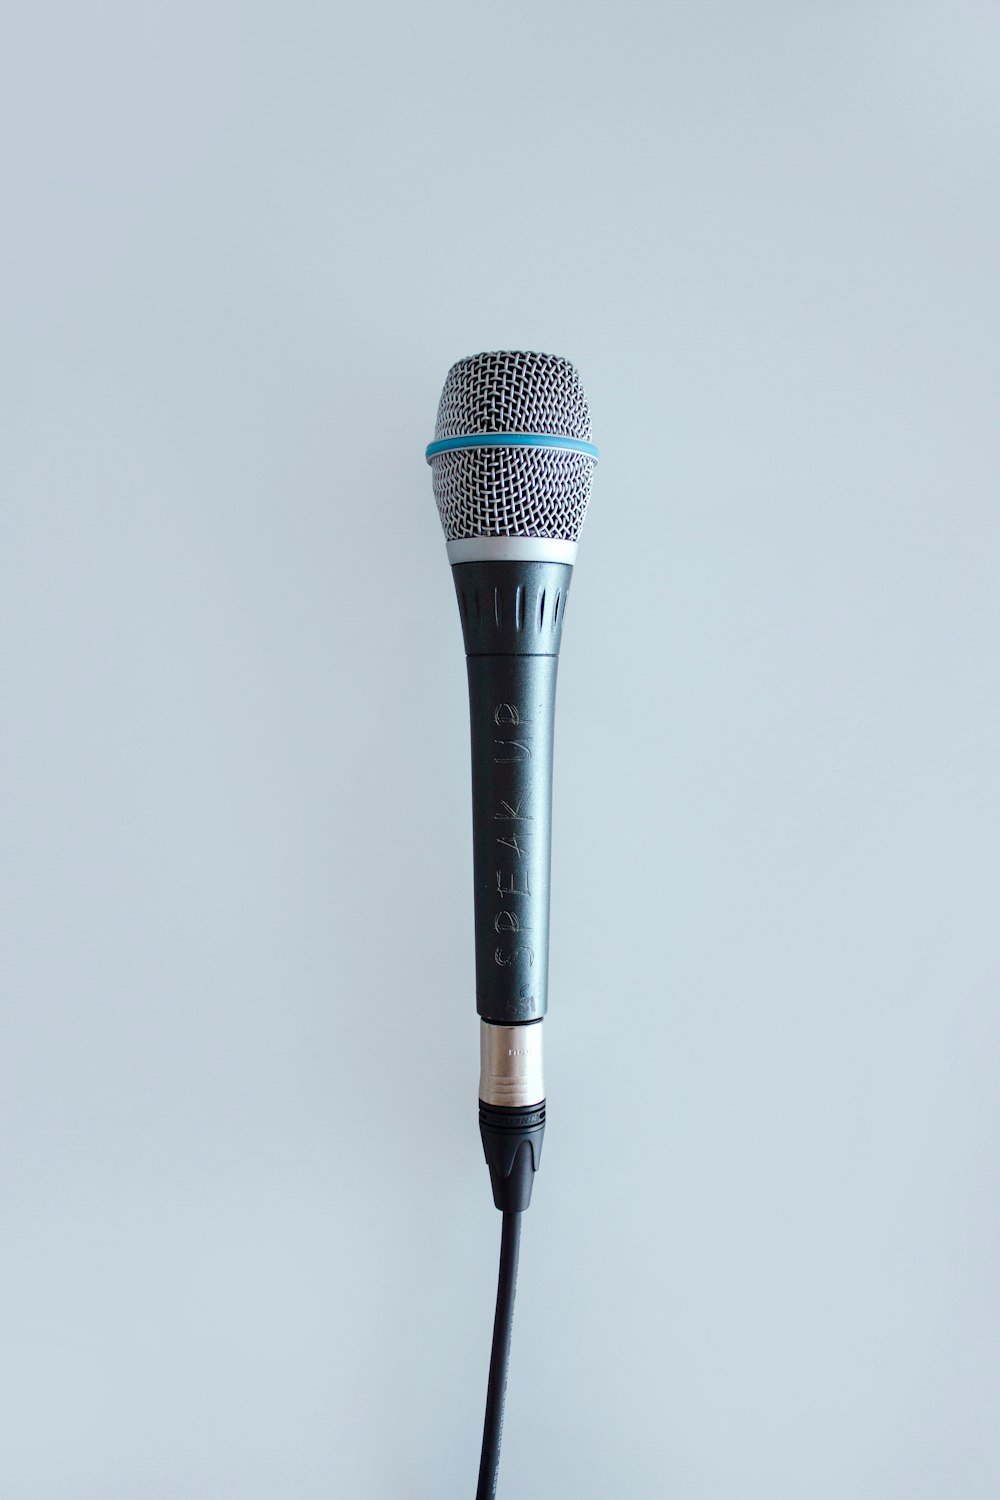 micrófono con cable negro y gris